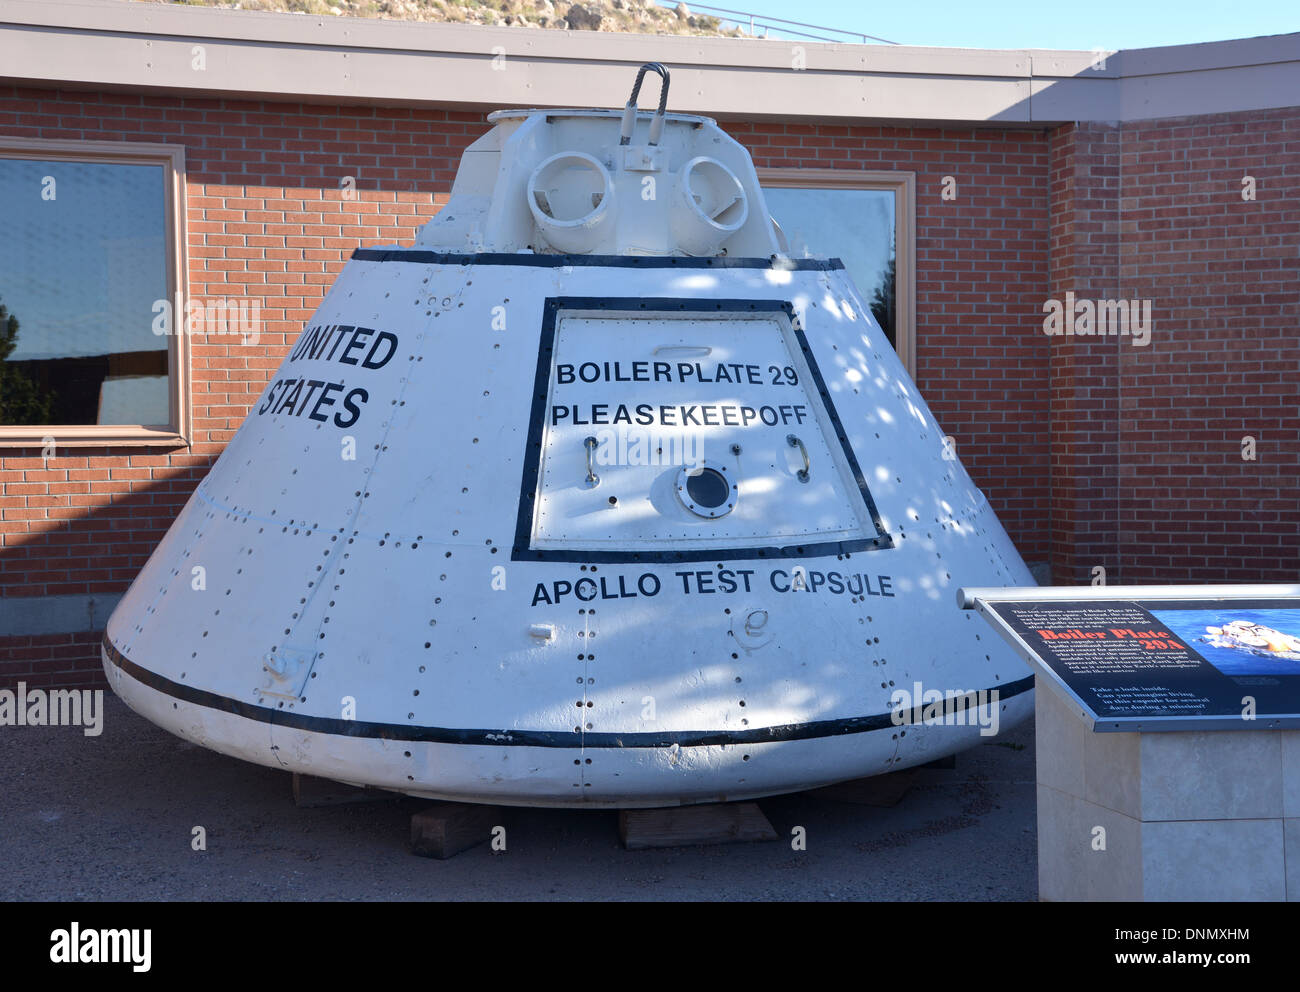 Apollo test capsule Boilerplate 29, NASA moonshot prototype space capsule at Meteorite Crater in Arizona Stock Photo